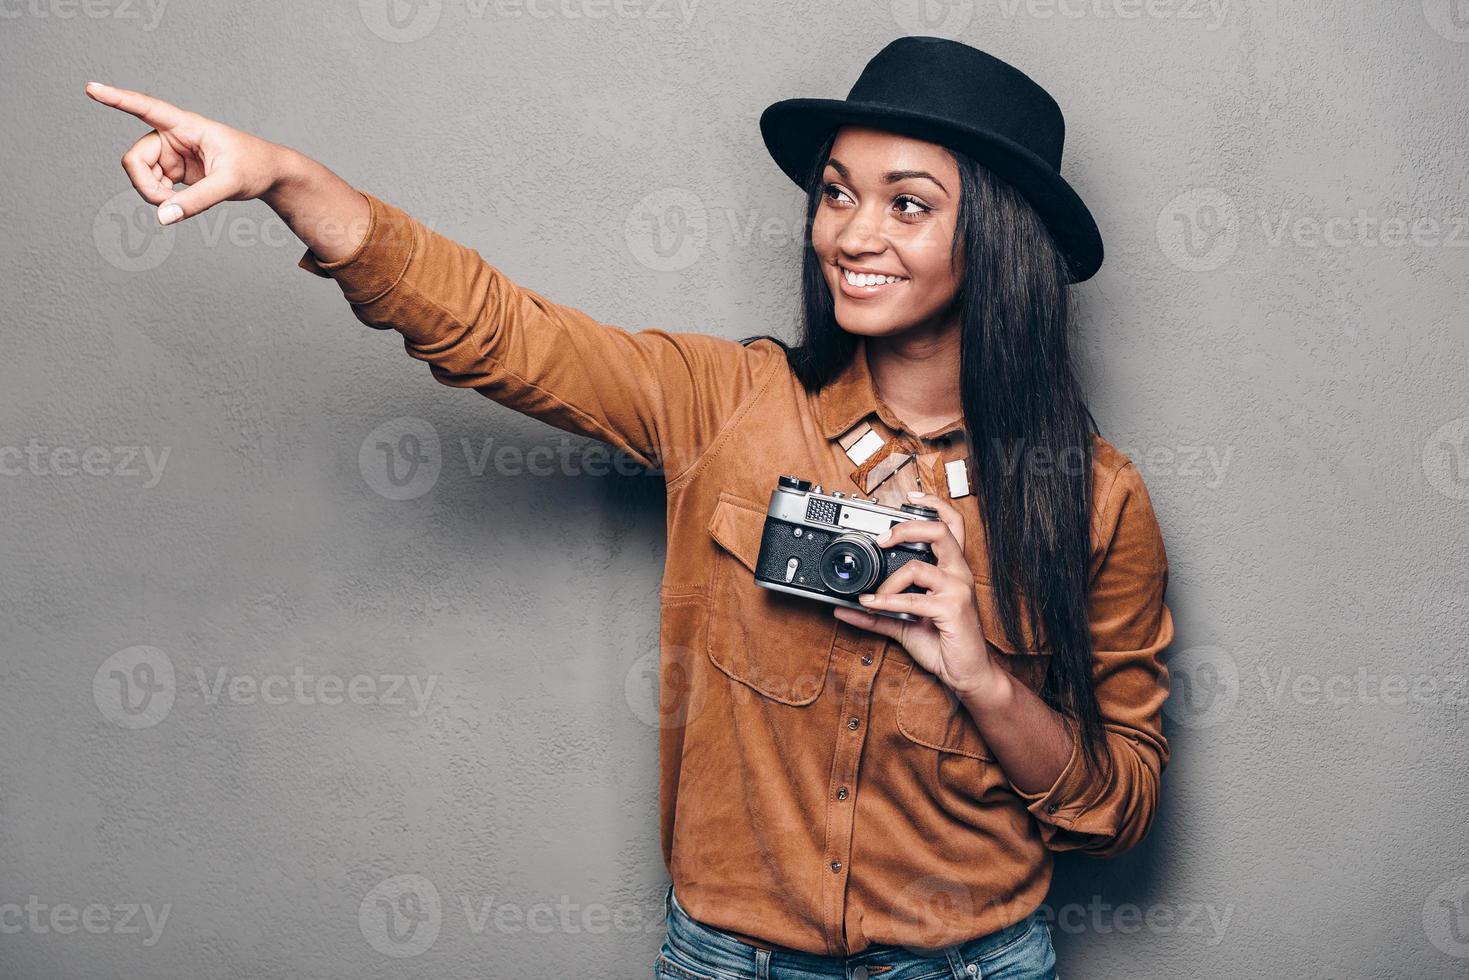 tomemos una foto allí, una hermosa y alegre joven africana sosteniendo una cámara de estilo retro y señalando con una sonrisa mientras se enfrenta a un fondo gris